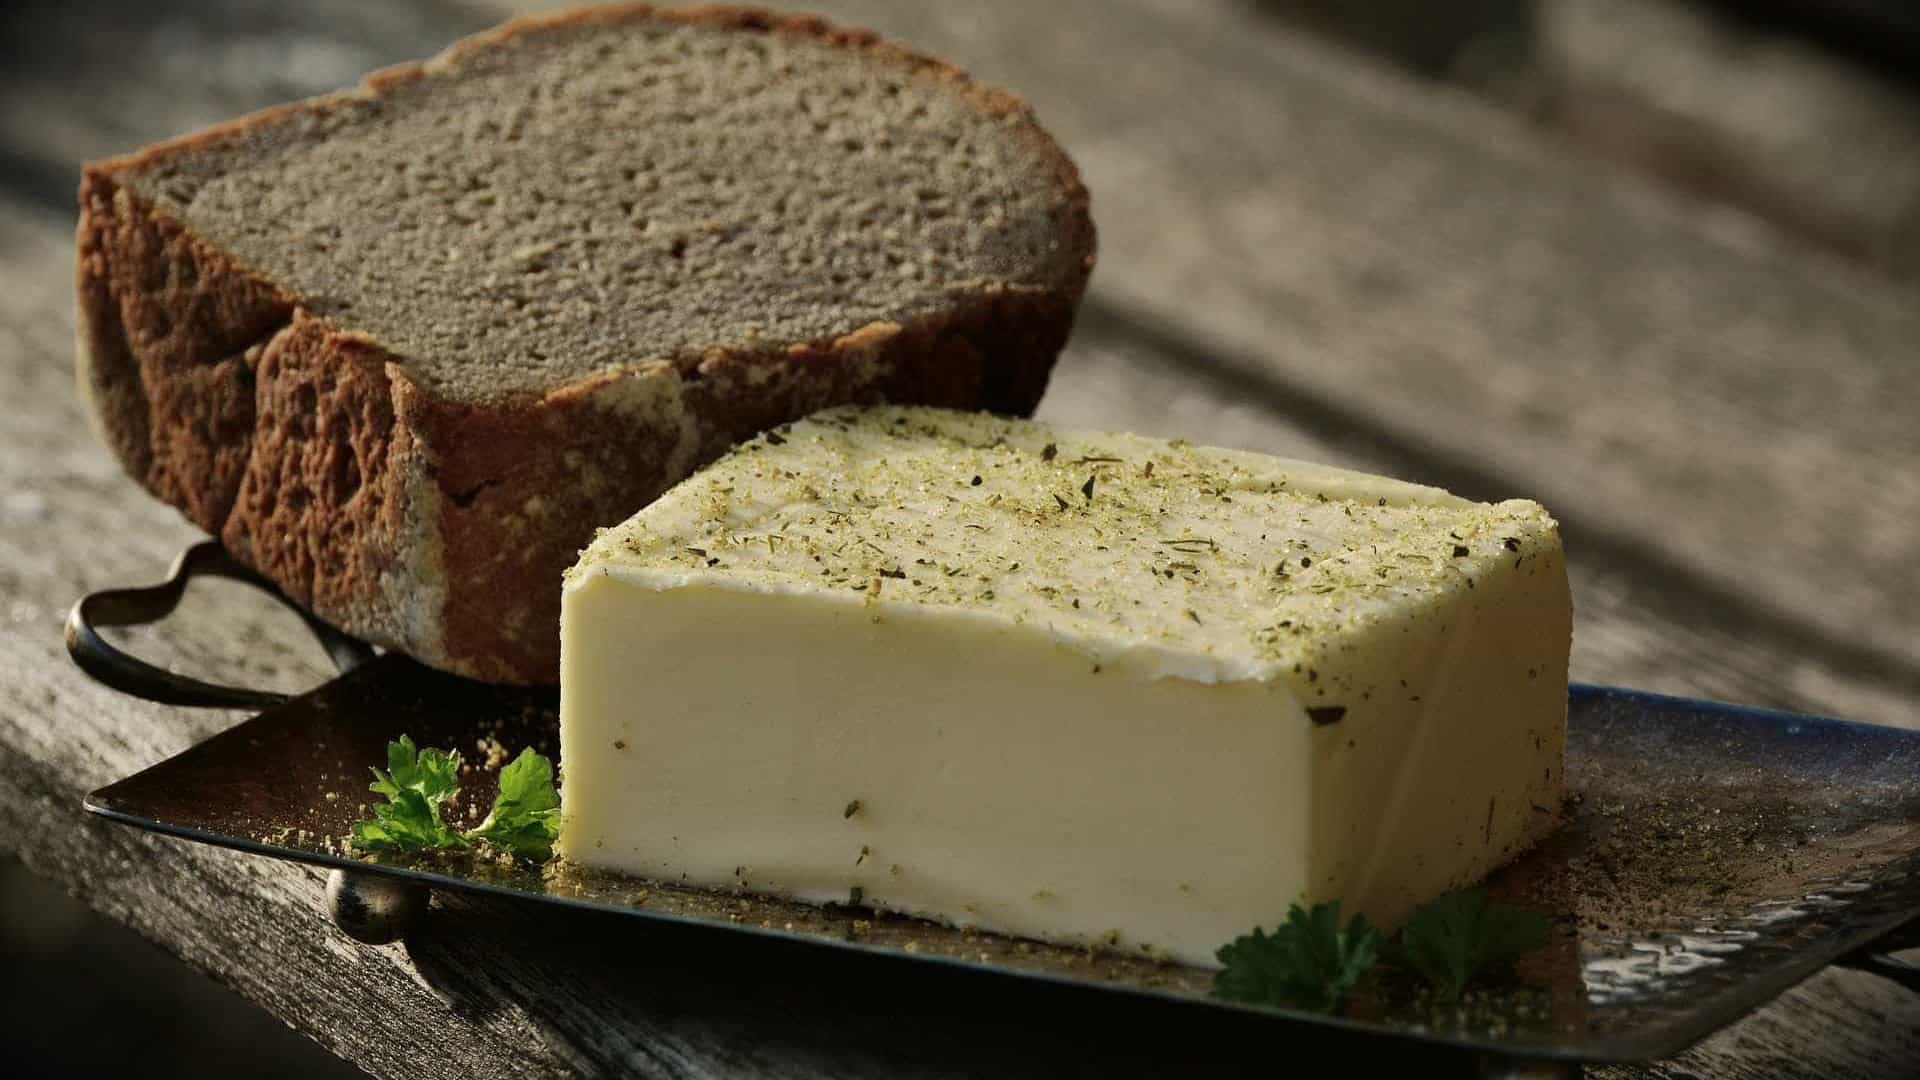 Manteiga caseira com apenas 2 ingredientes e em 5 minutos